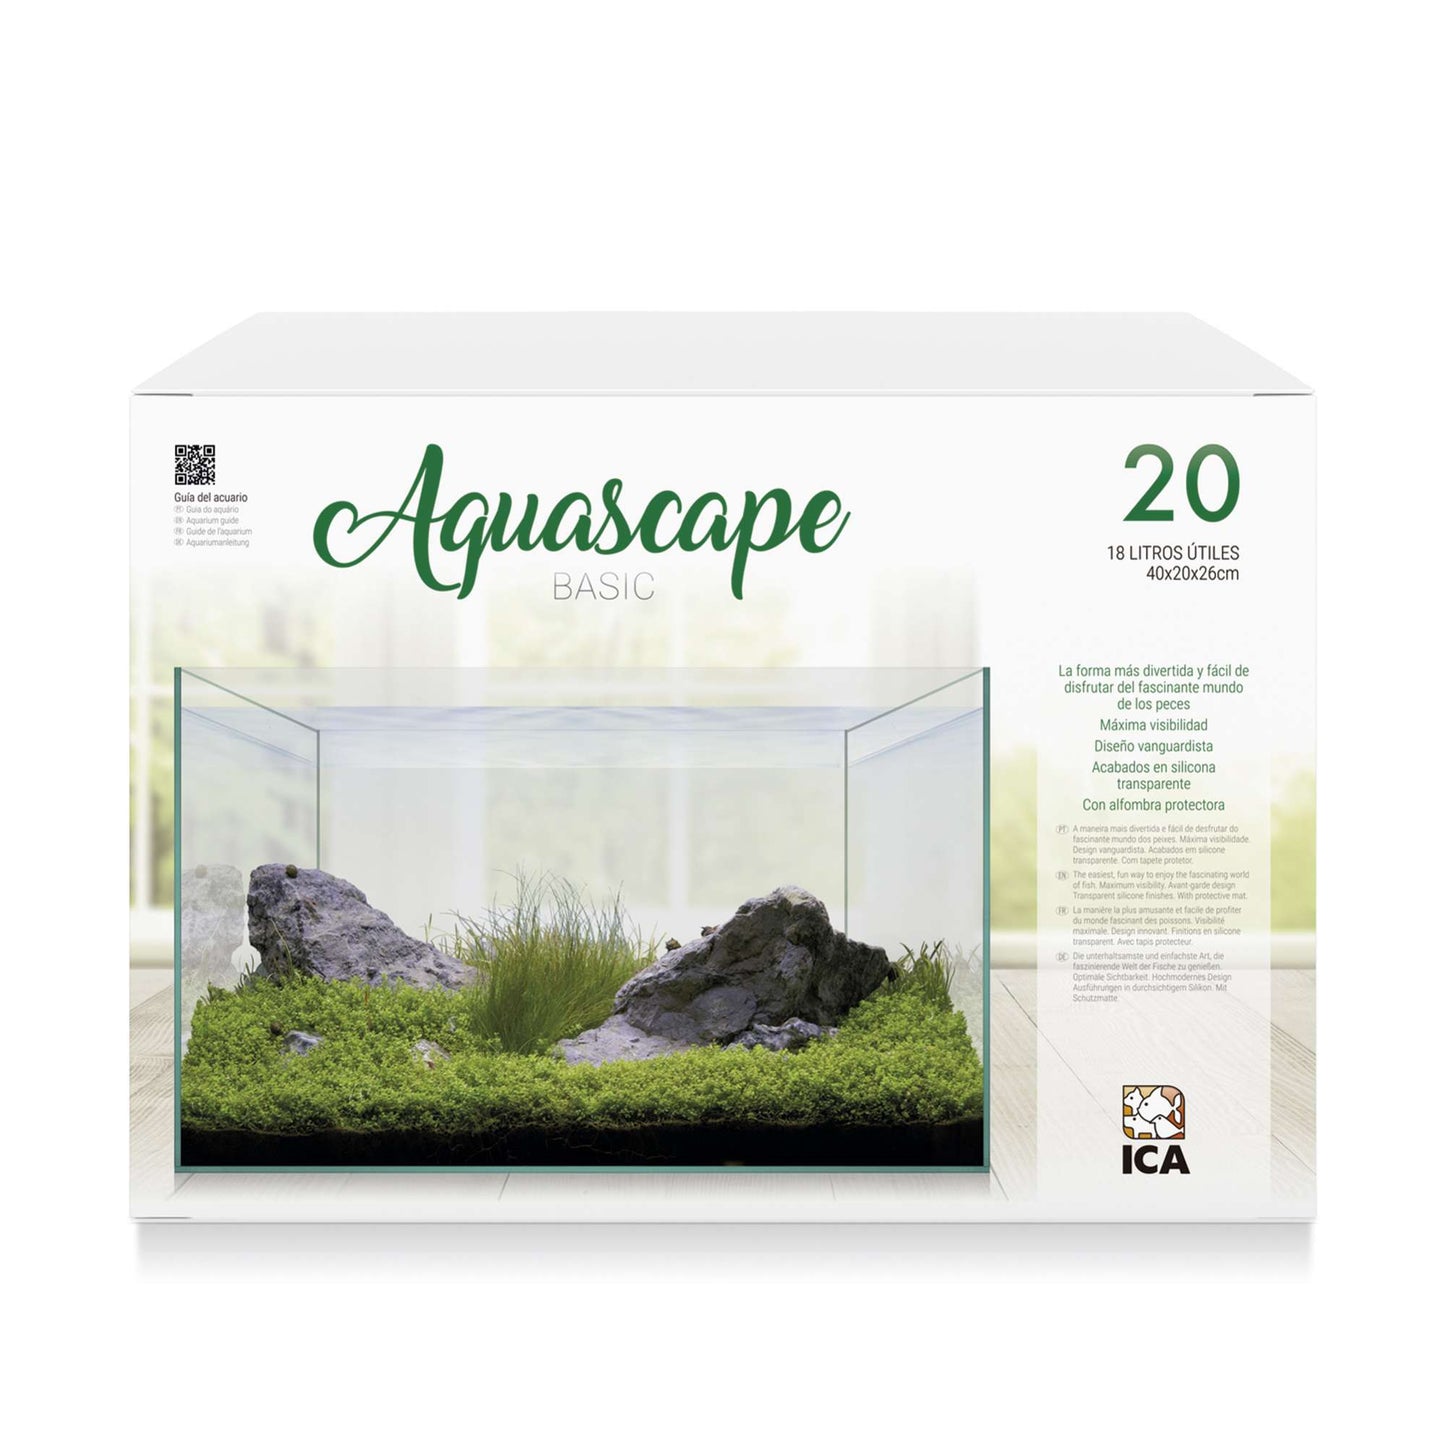 Aquascape basic 20 litros